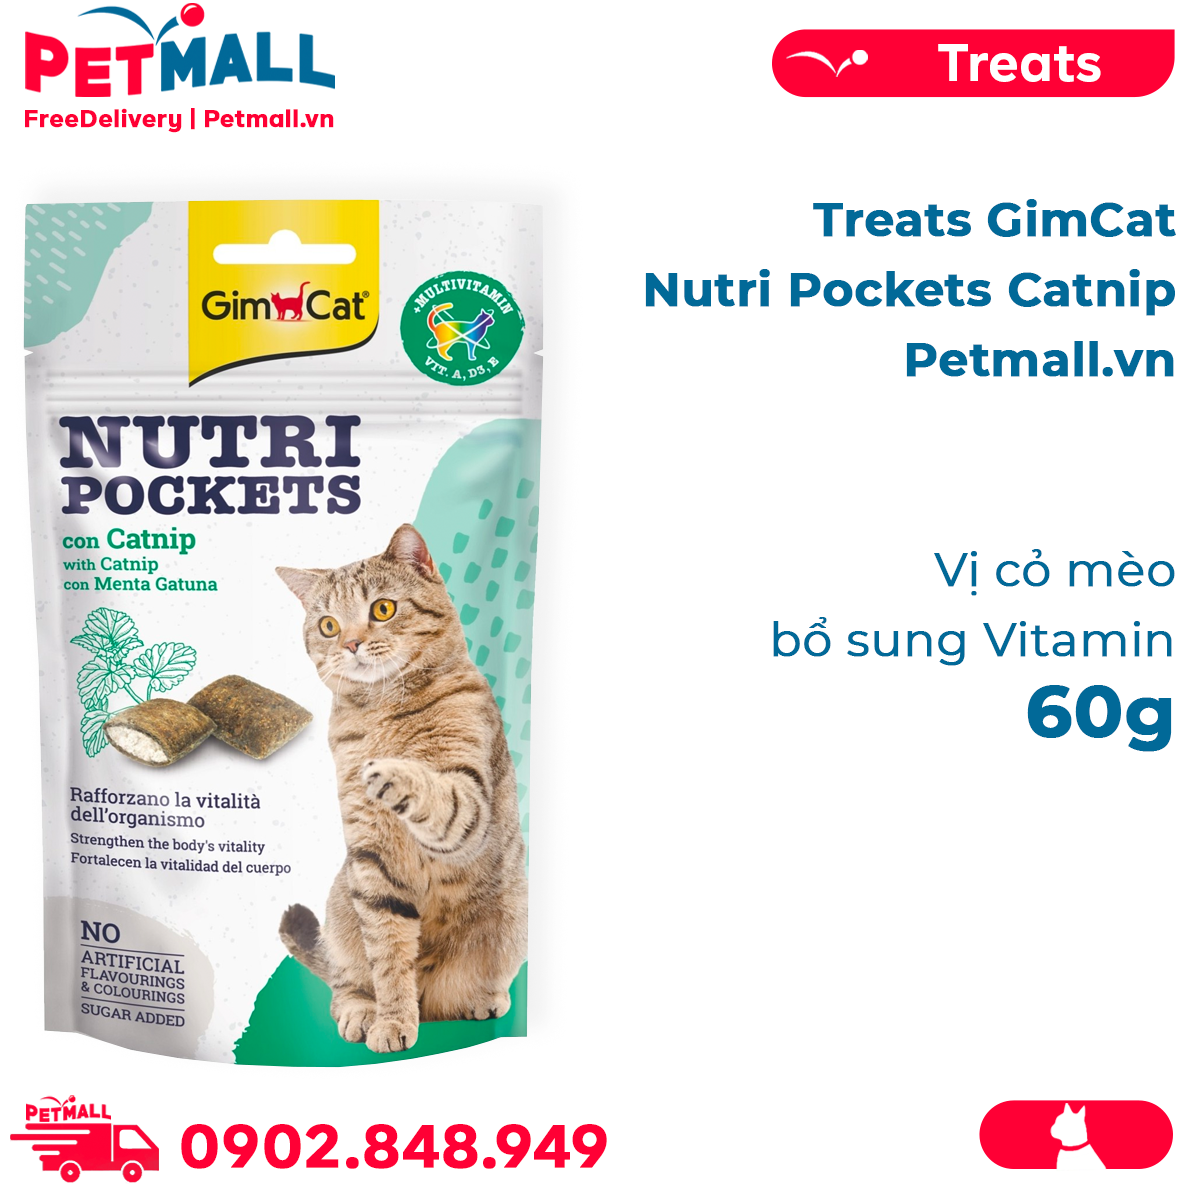 Bánh thưởng Gimcat Nutri Pockets Catnip 60g - Vị cỏ mèo, bổ sung Vitamin Petmall thumbnail